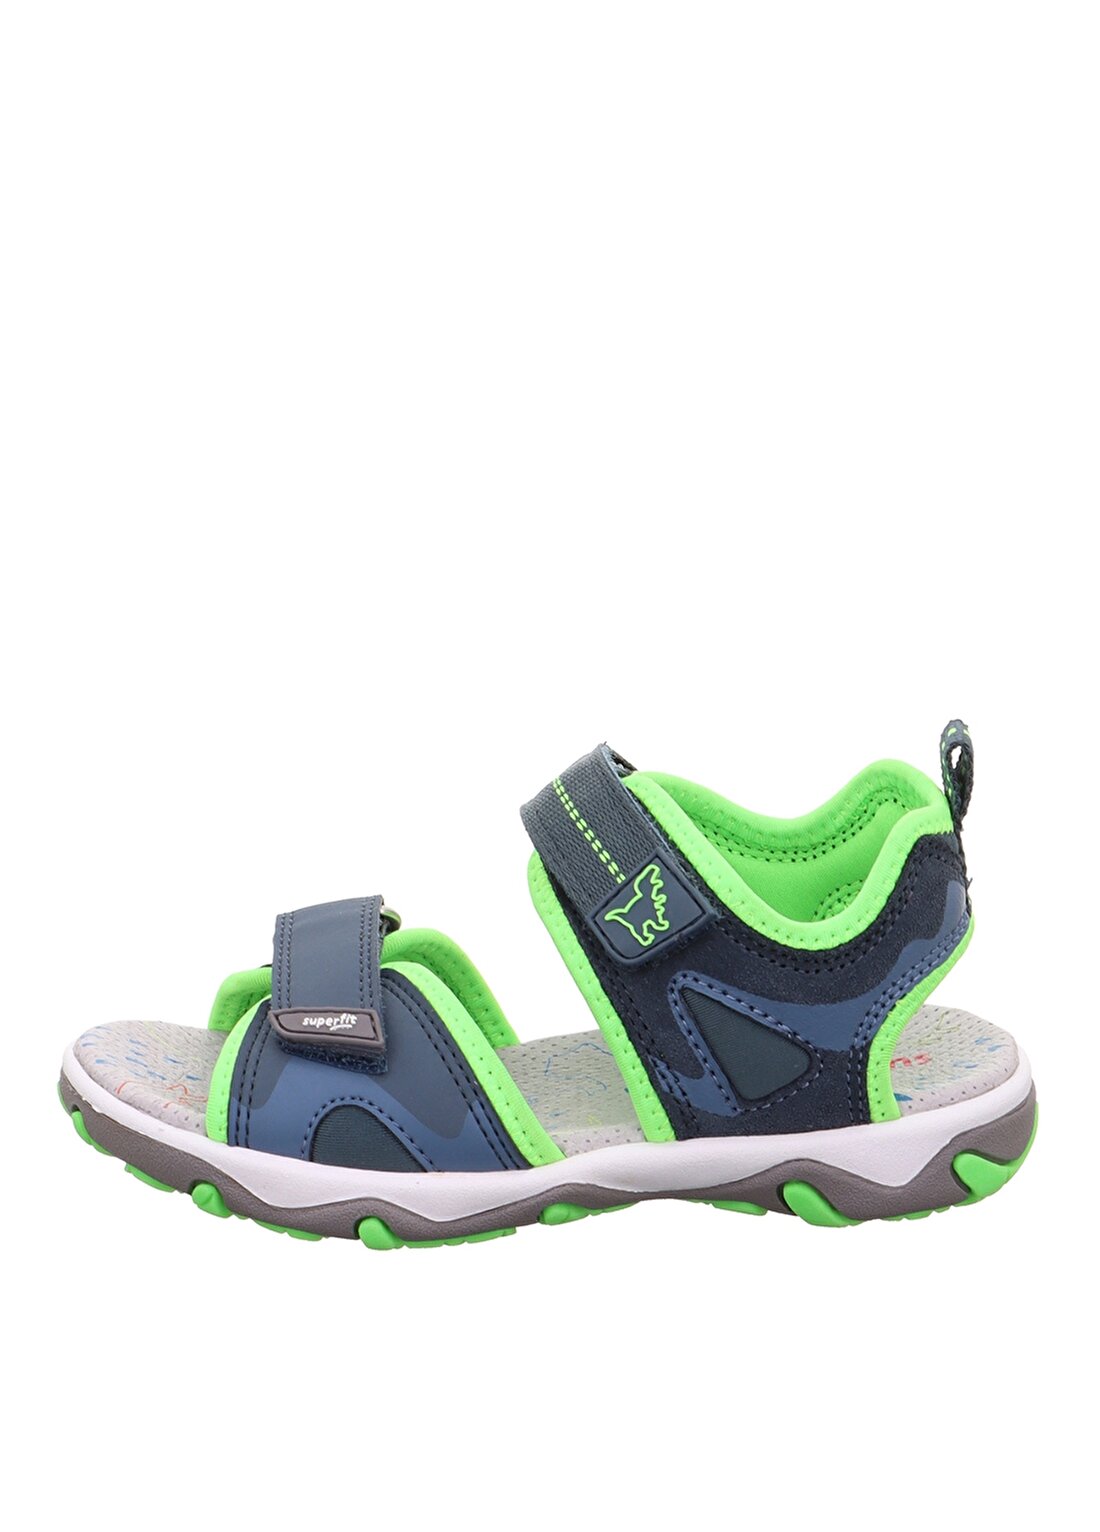 Superfit Mavi - Yeşil Erkek Çocuk Sandalet MIKE 3.0 1-009470-8030-3